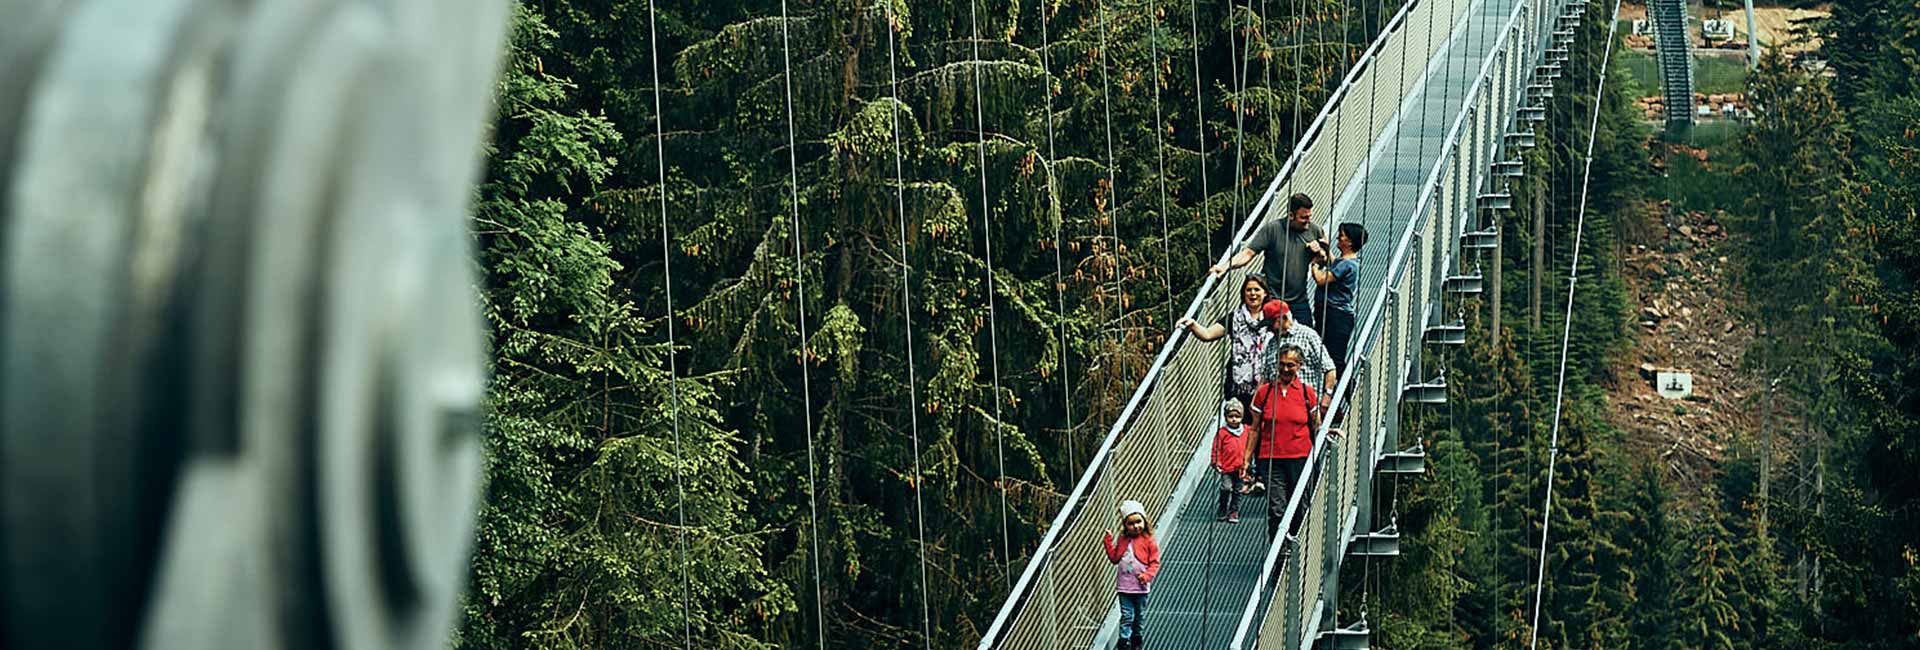 Besucher überqueren die WILDLINE Hängebrücke